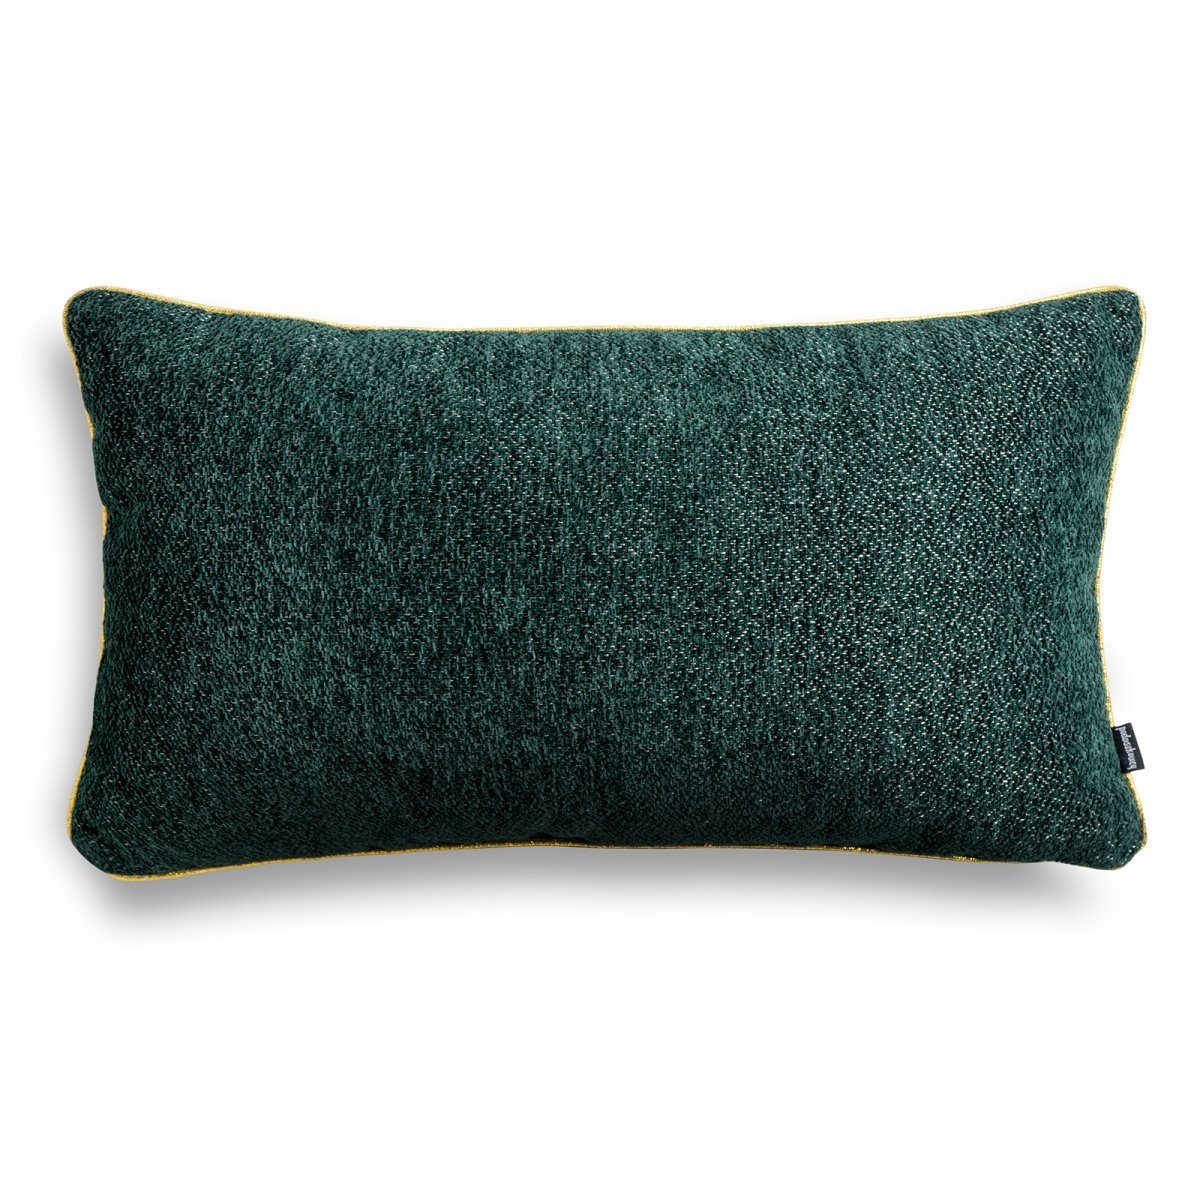 Alaska zielona błyszcząca poduszka dekoracyjna 50x30